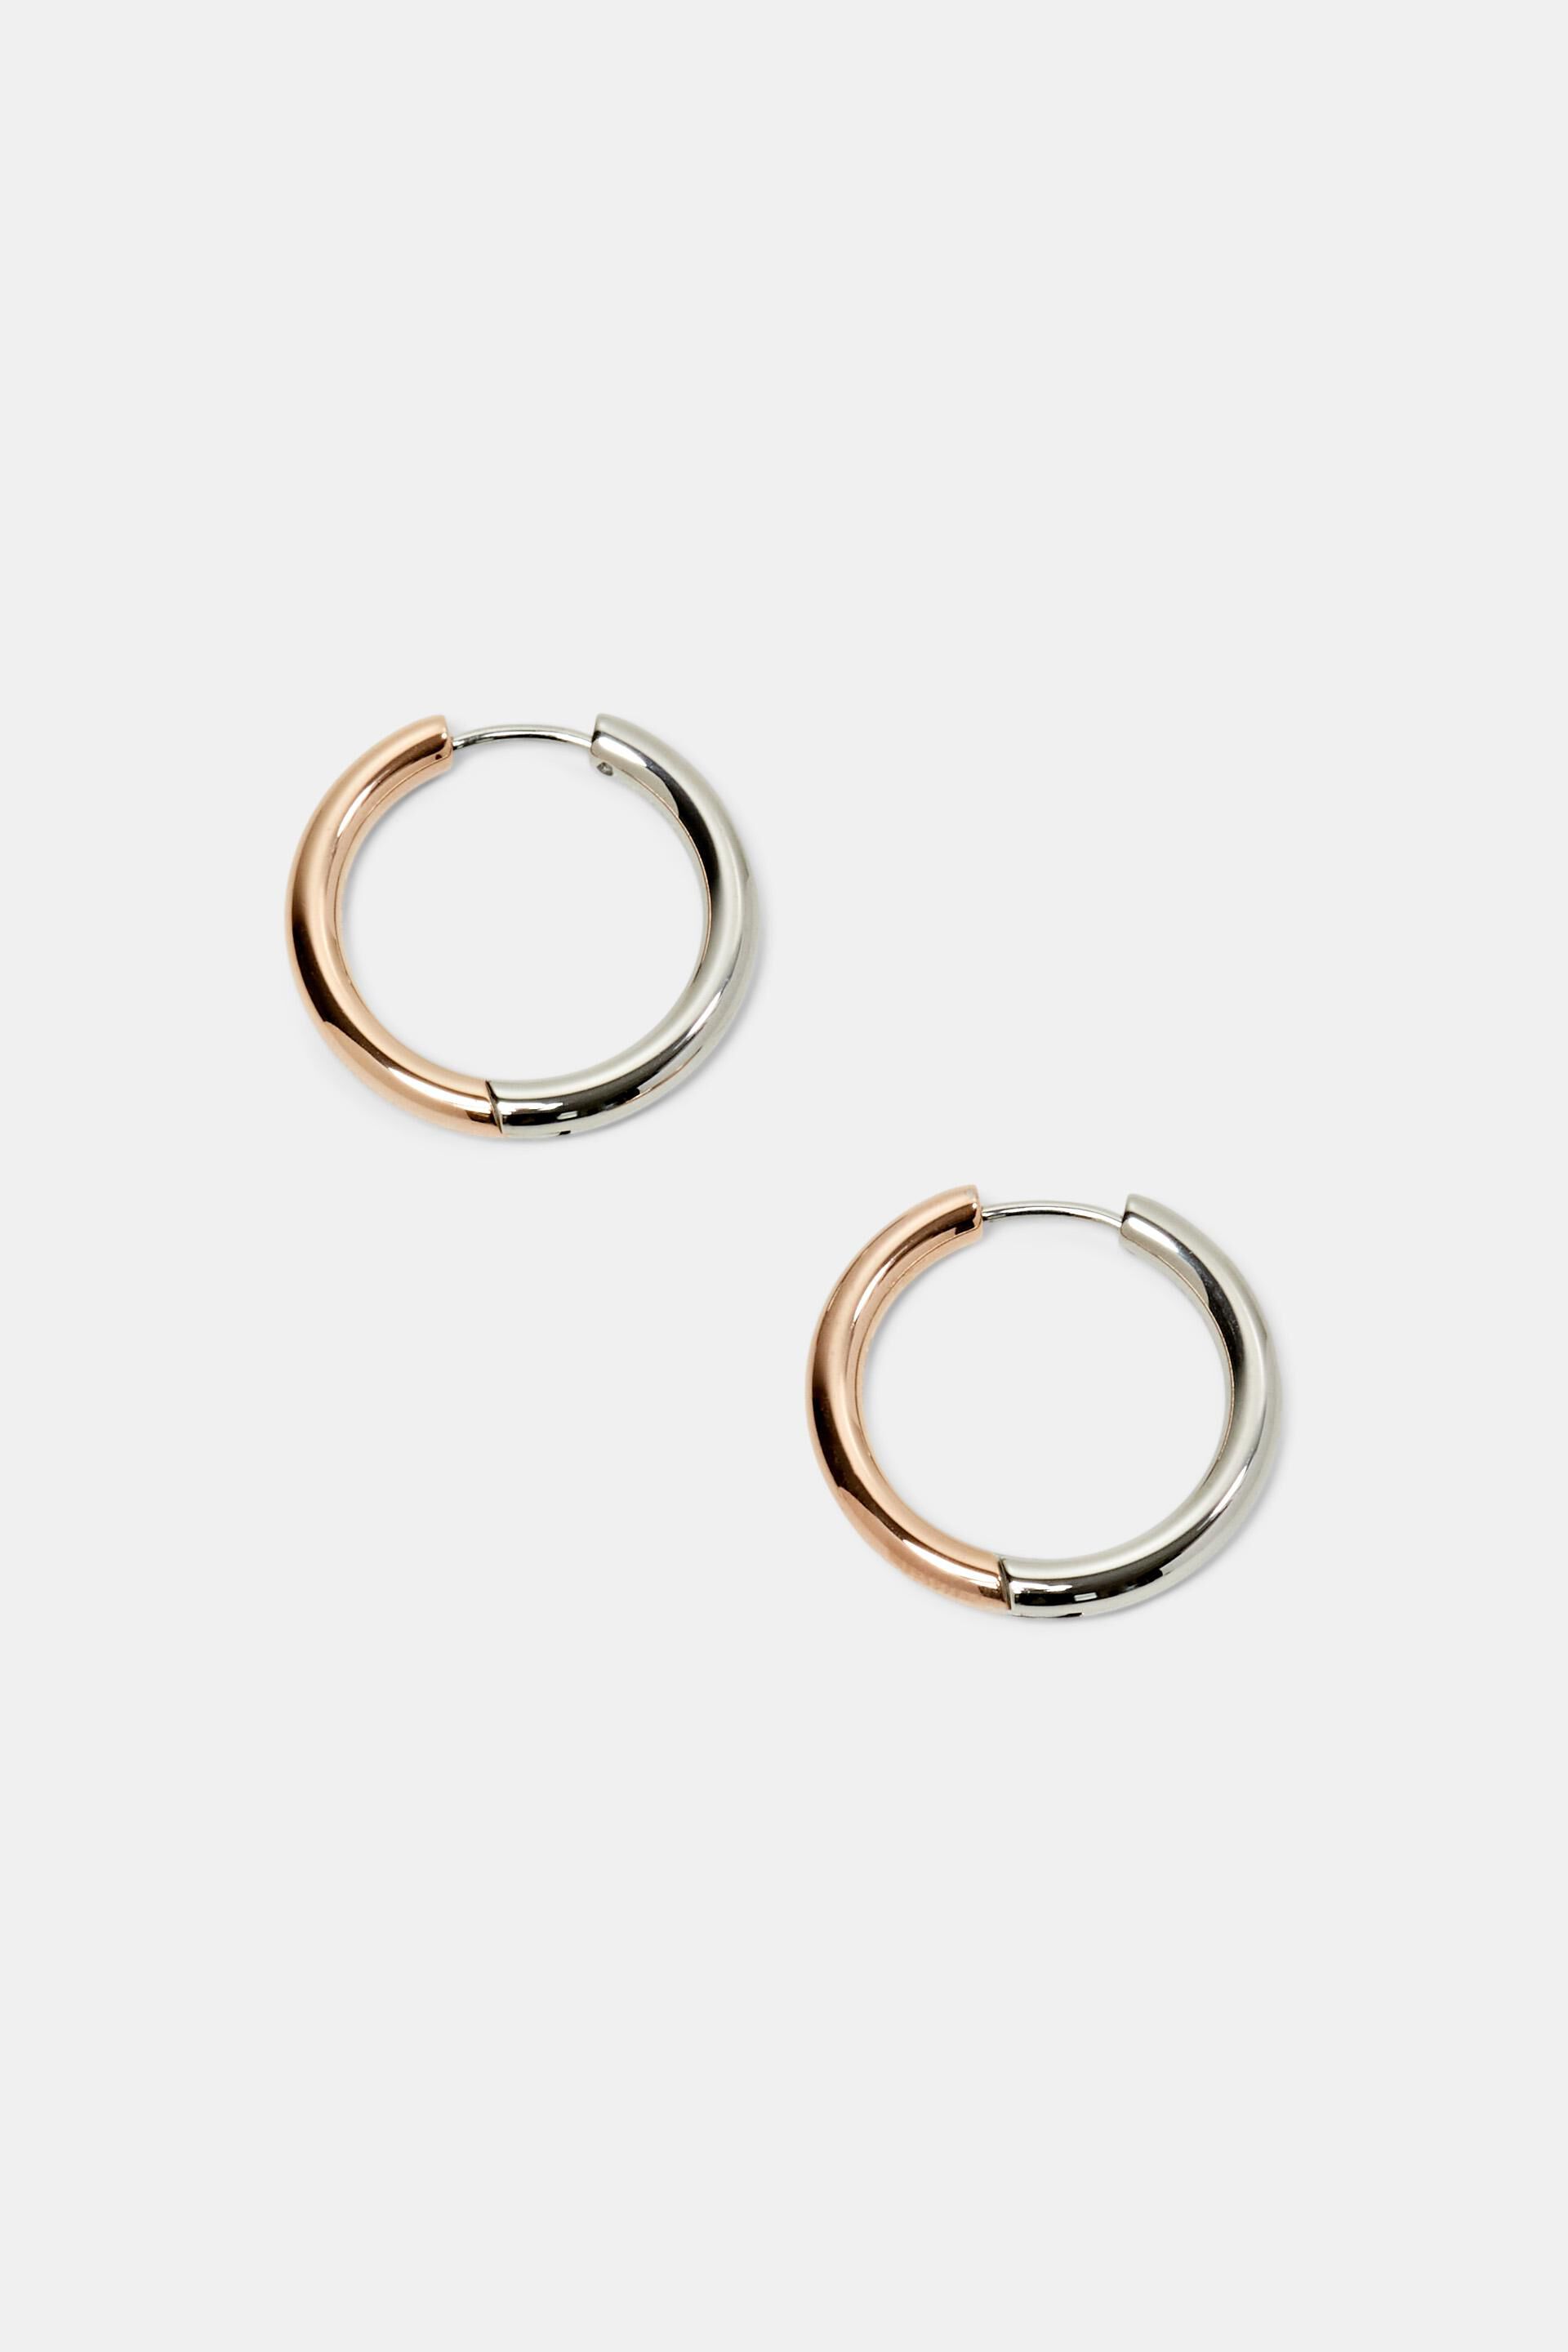 Bi-color hoop earrings, stainless steel